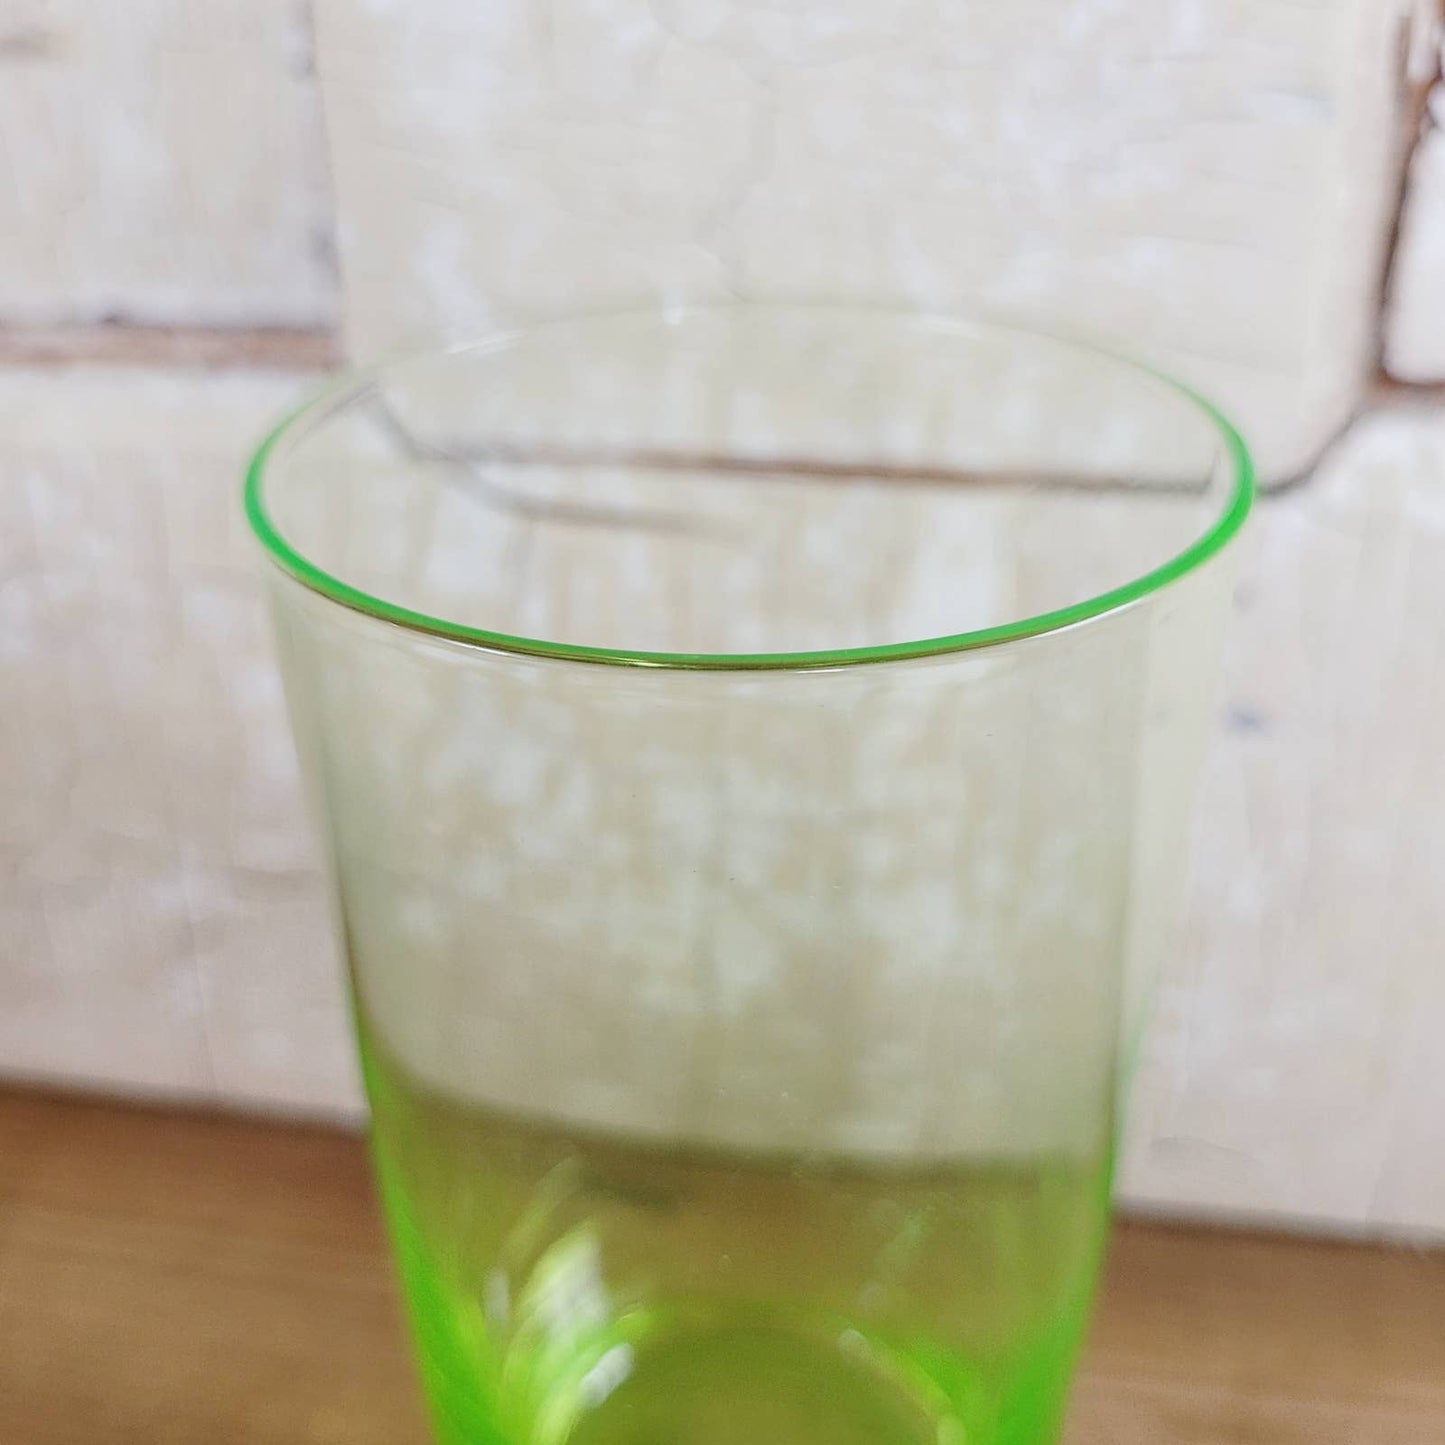 Vintage Uranium Drinking Glass Glows Bright